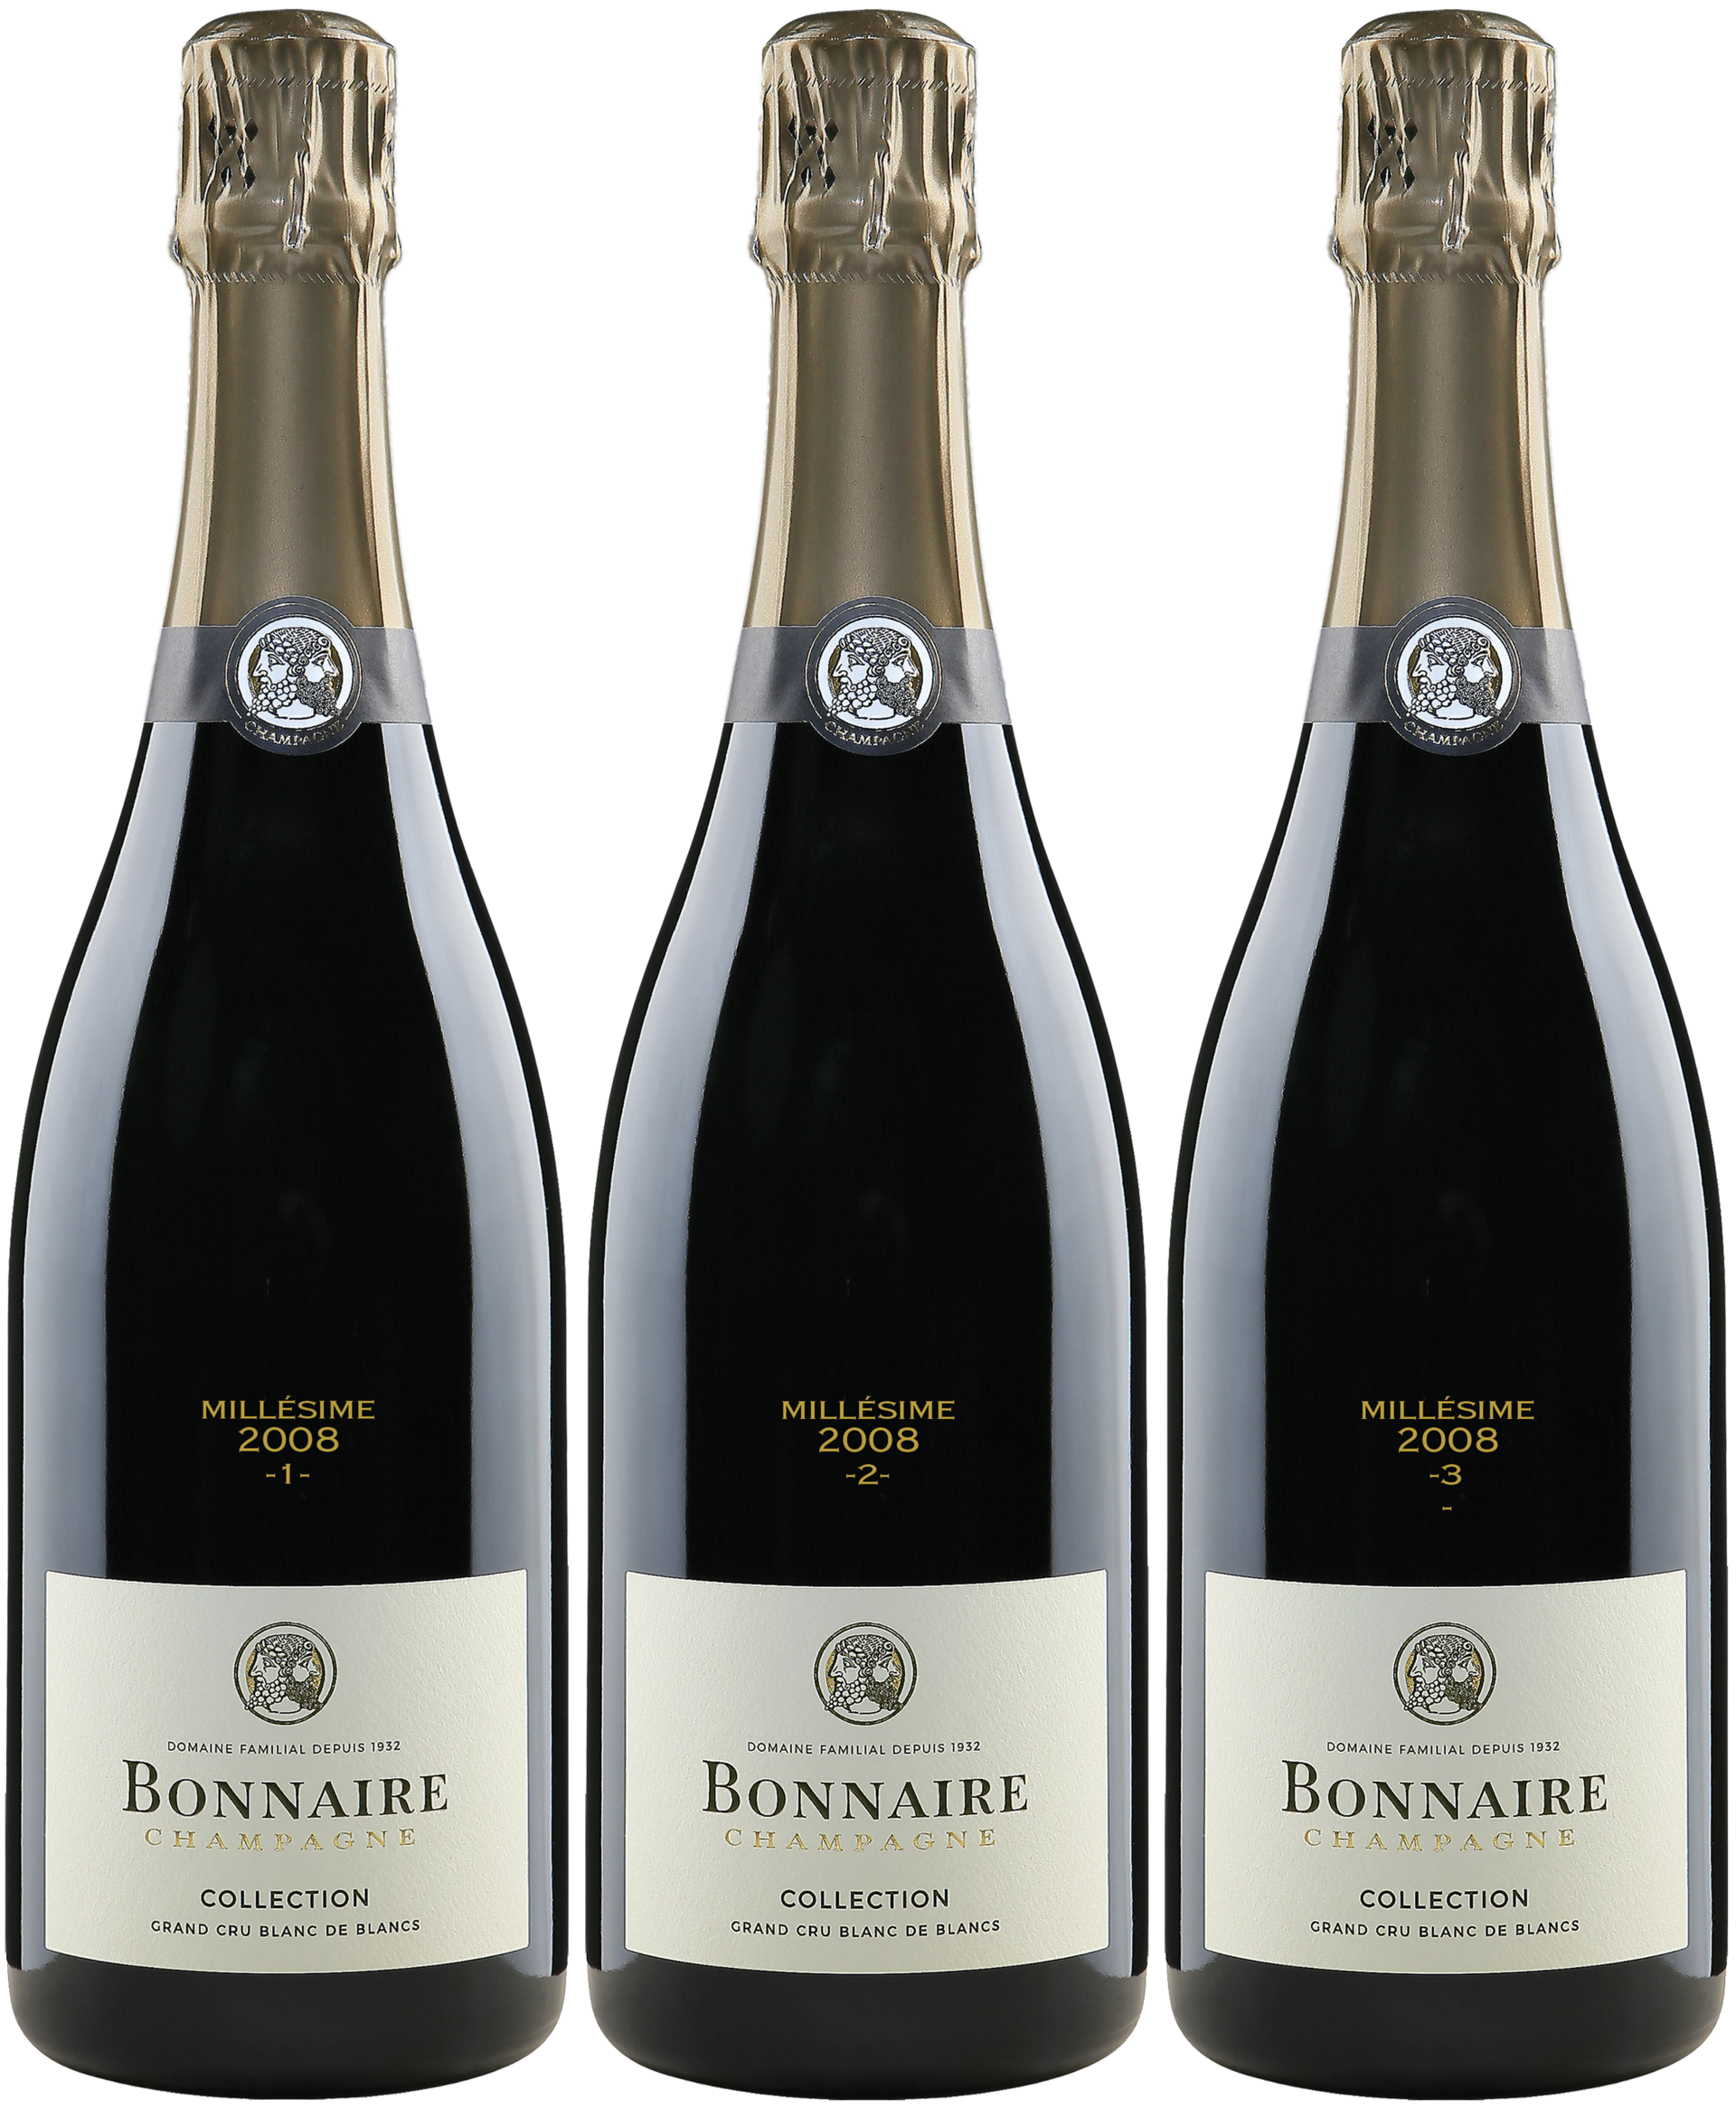 Champagner Bonnaire Trilogie 2008 Edition